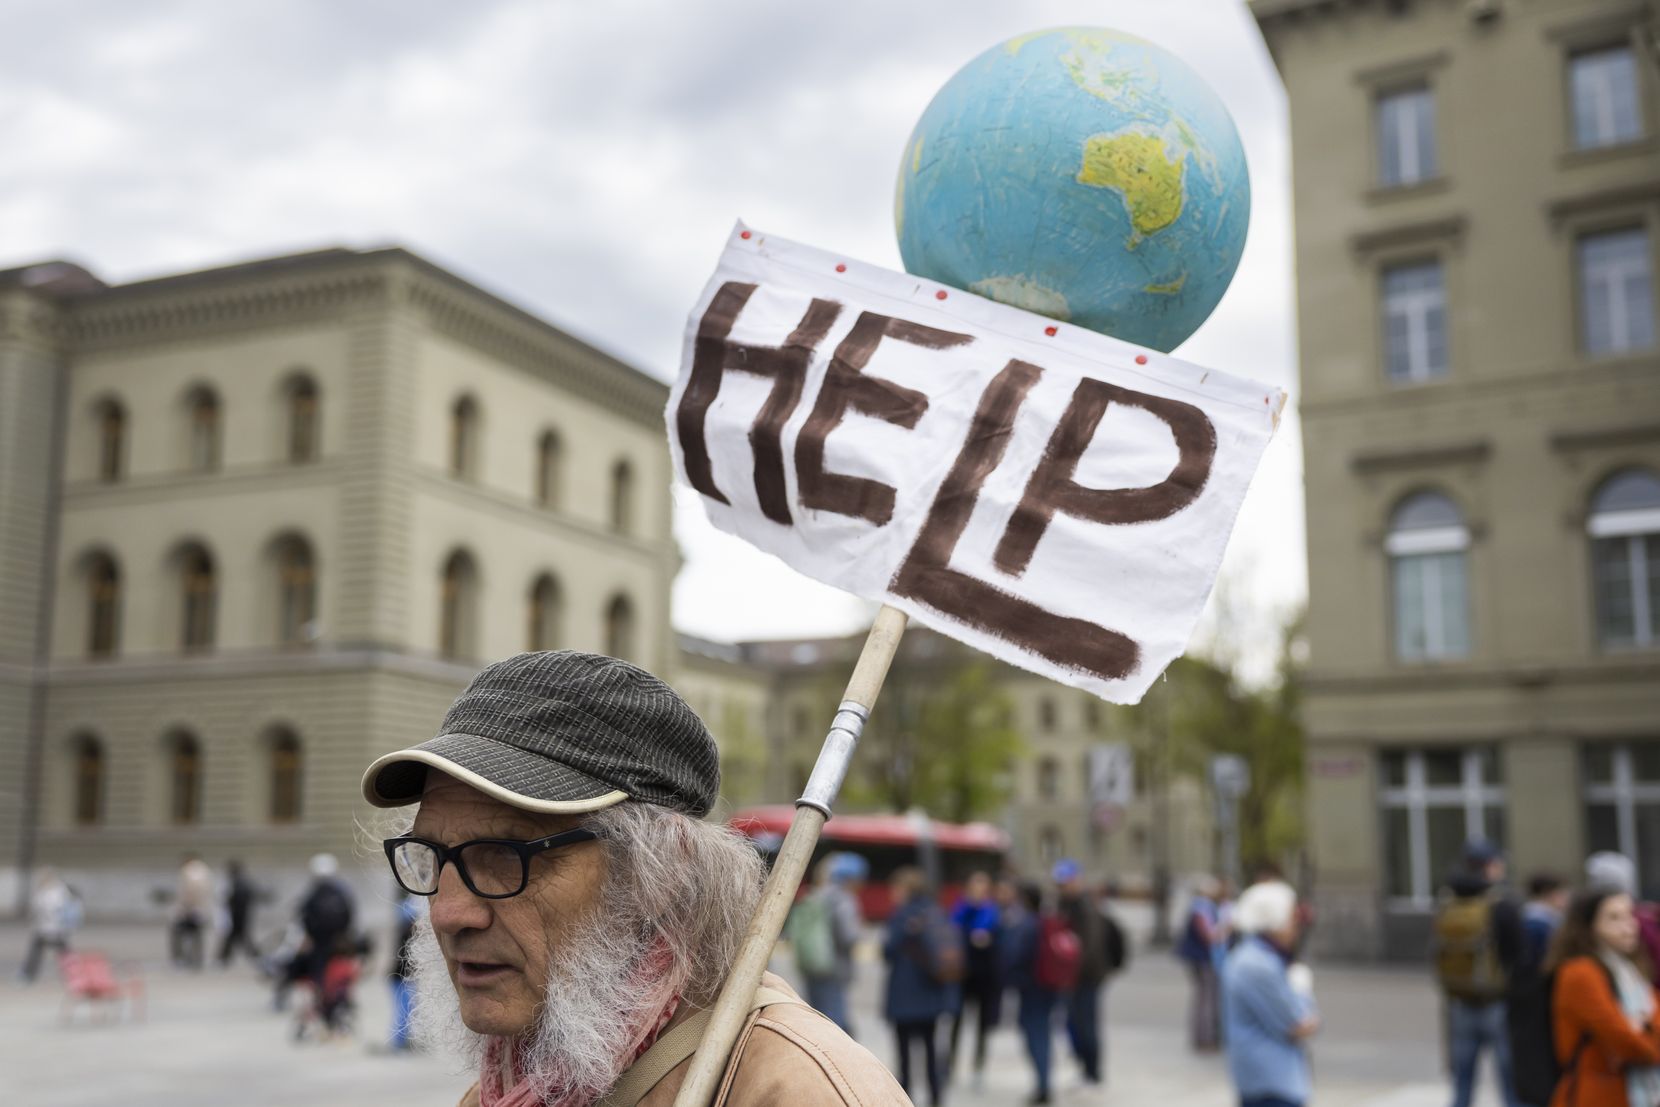 Ein Teilnehmer am La Marche Bleue haelt eine Weltkugel und ein Plakat mit der Aufschrift Help auf dem Bundesplatz.